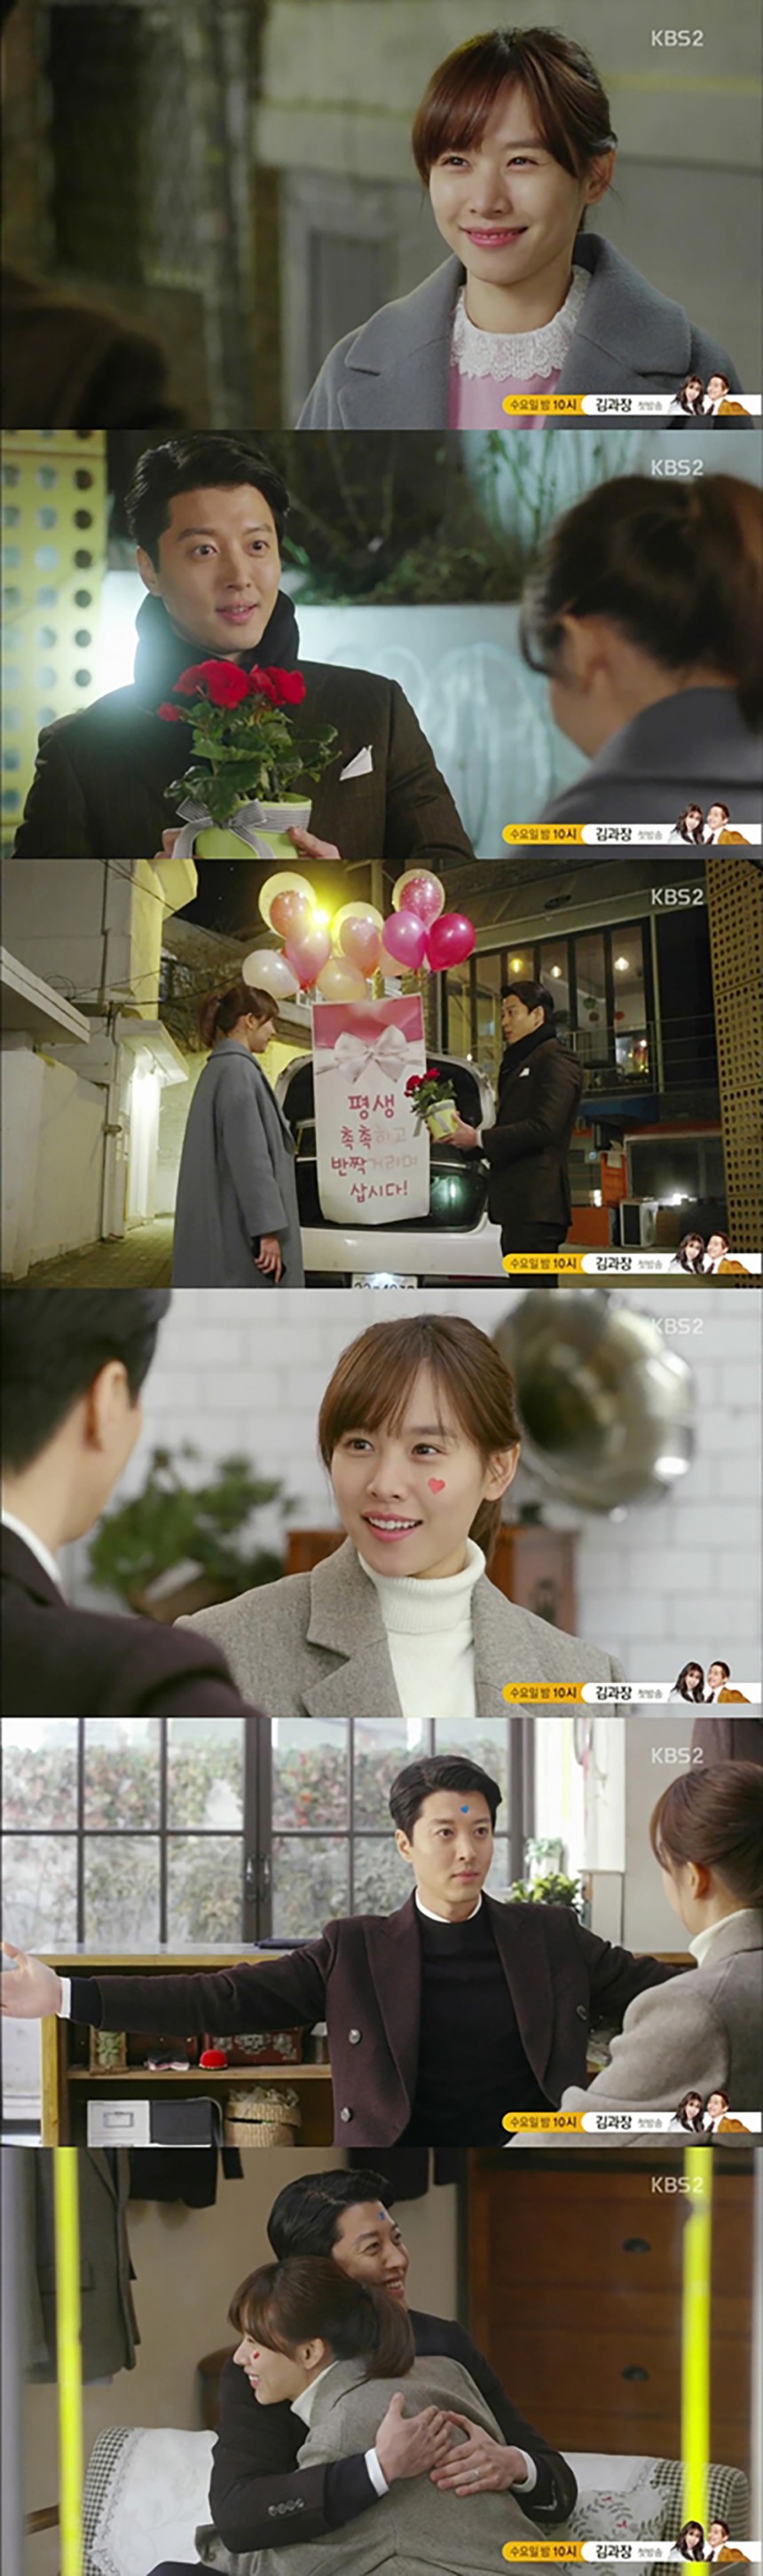 ‘월계수 양복점 신사들’ 조윤희 / KBS2 ‘월계수 양복점 신사들’ 방송캡처